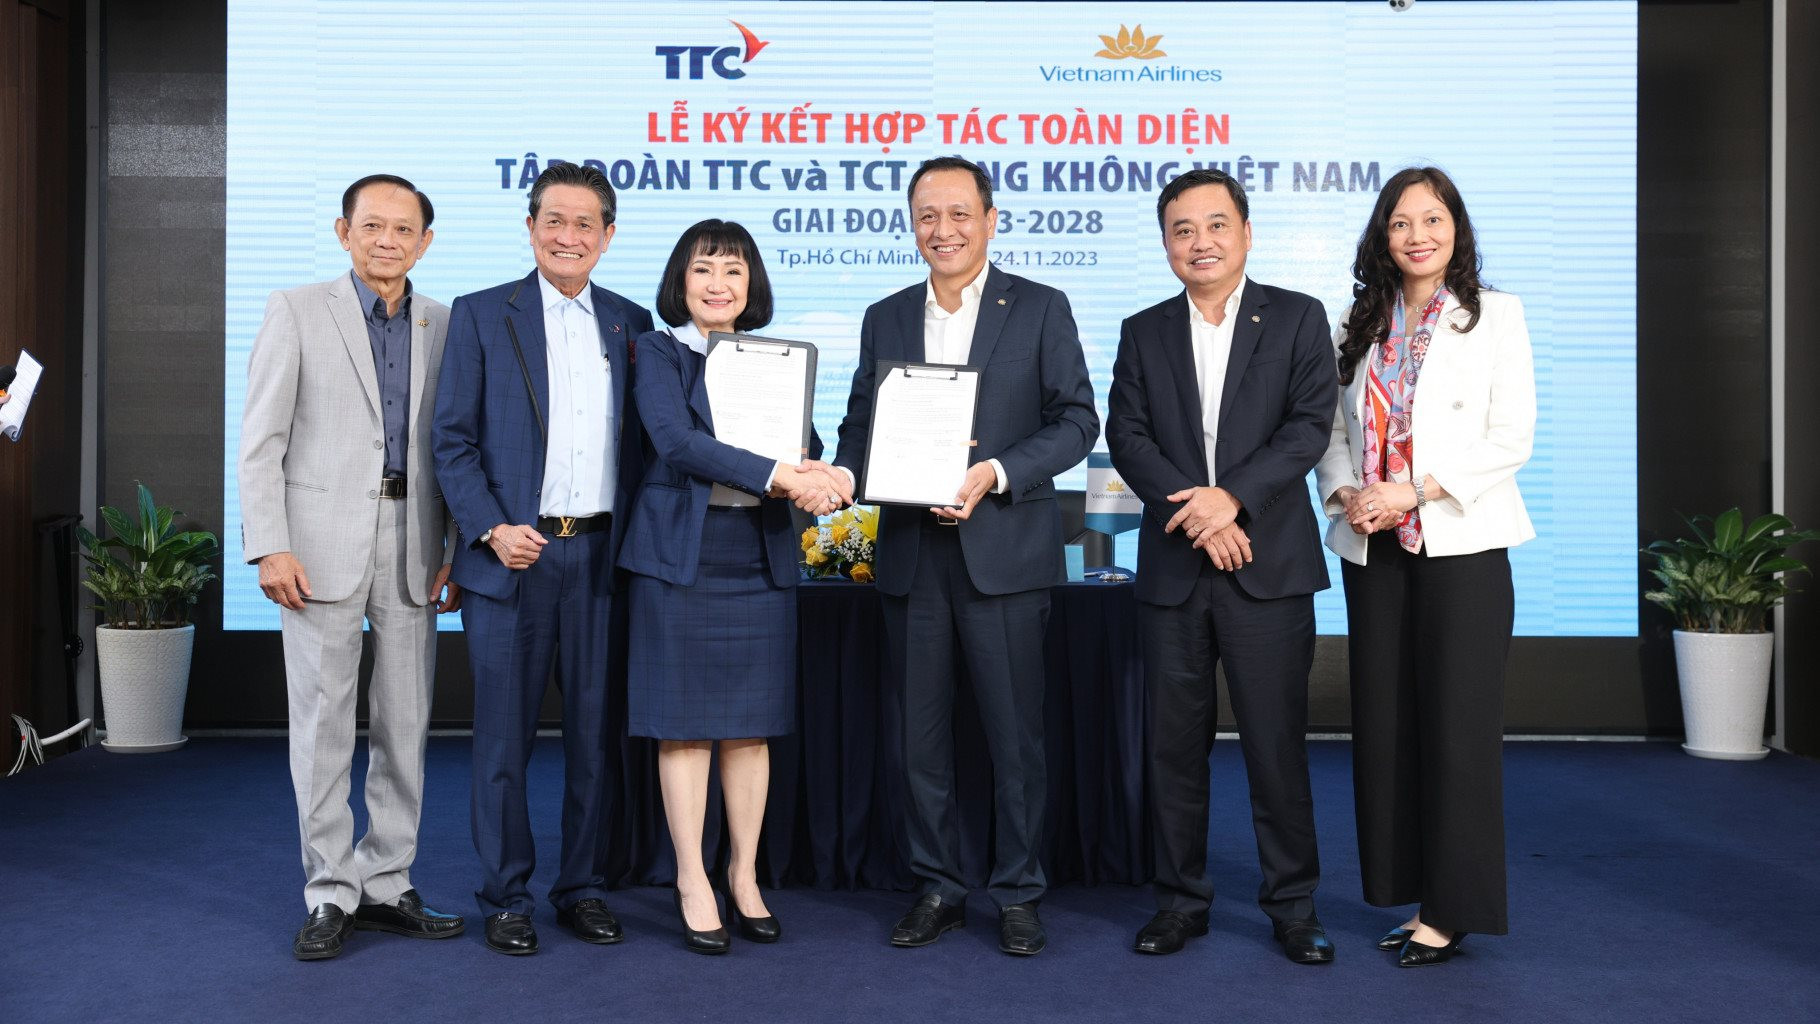 Vietnam Airlines ký kết hợp tác toàn diện với Tập đoàn TTC